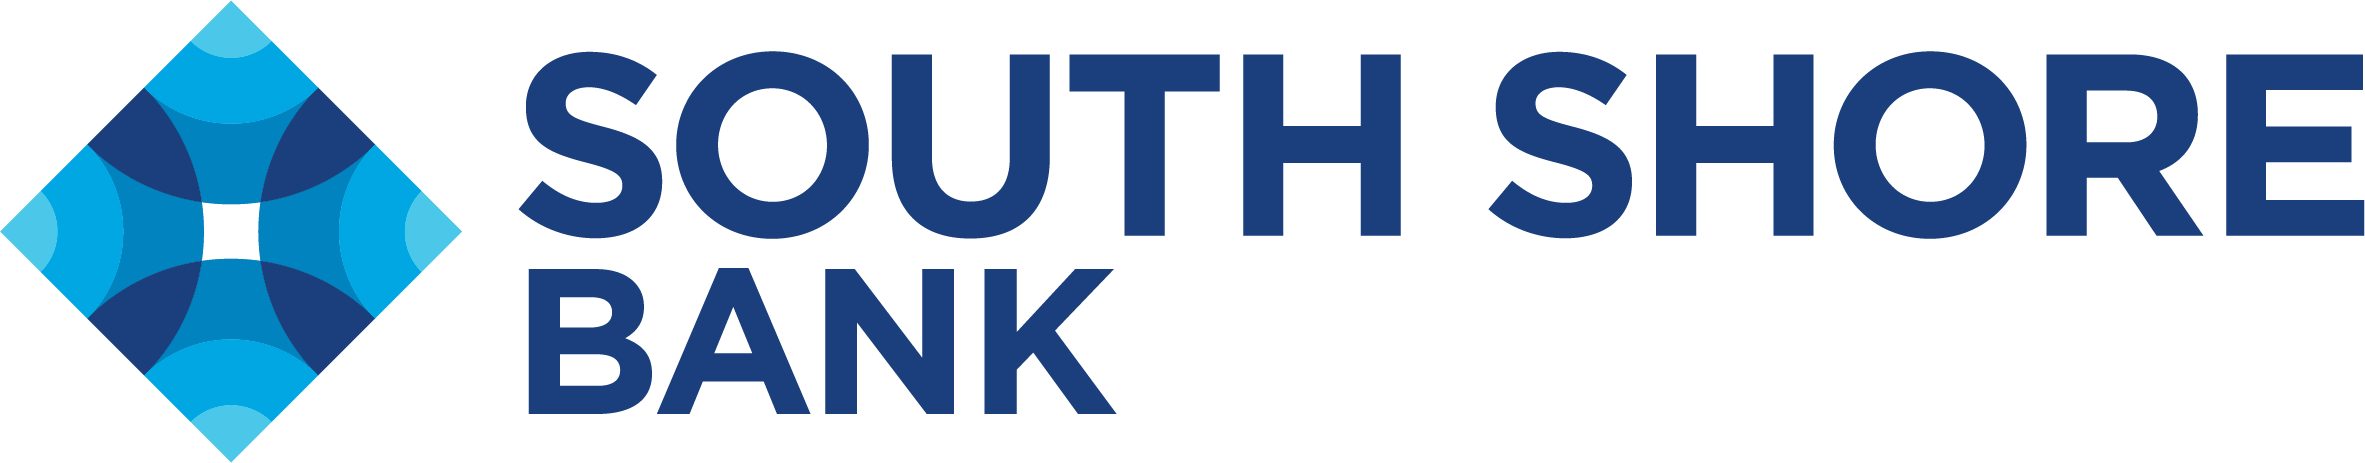 South-Shore-Bank-logo-637402685988958862